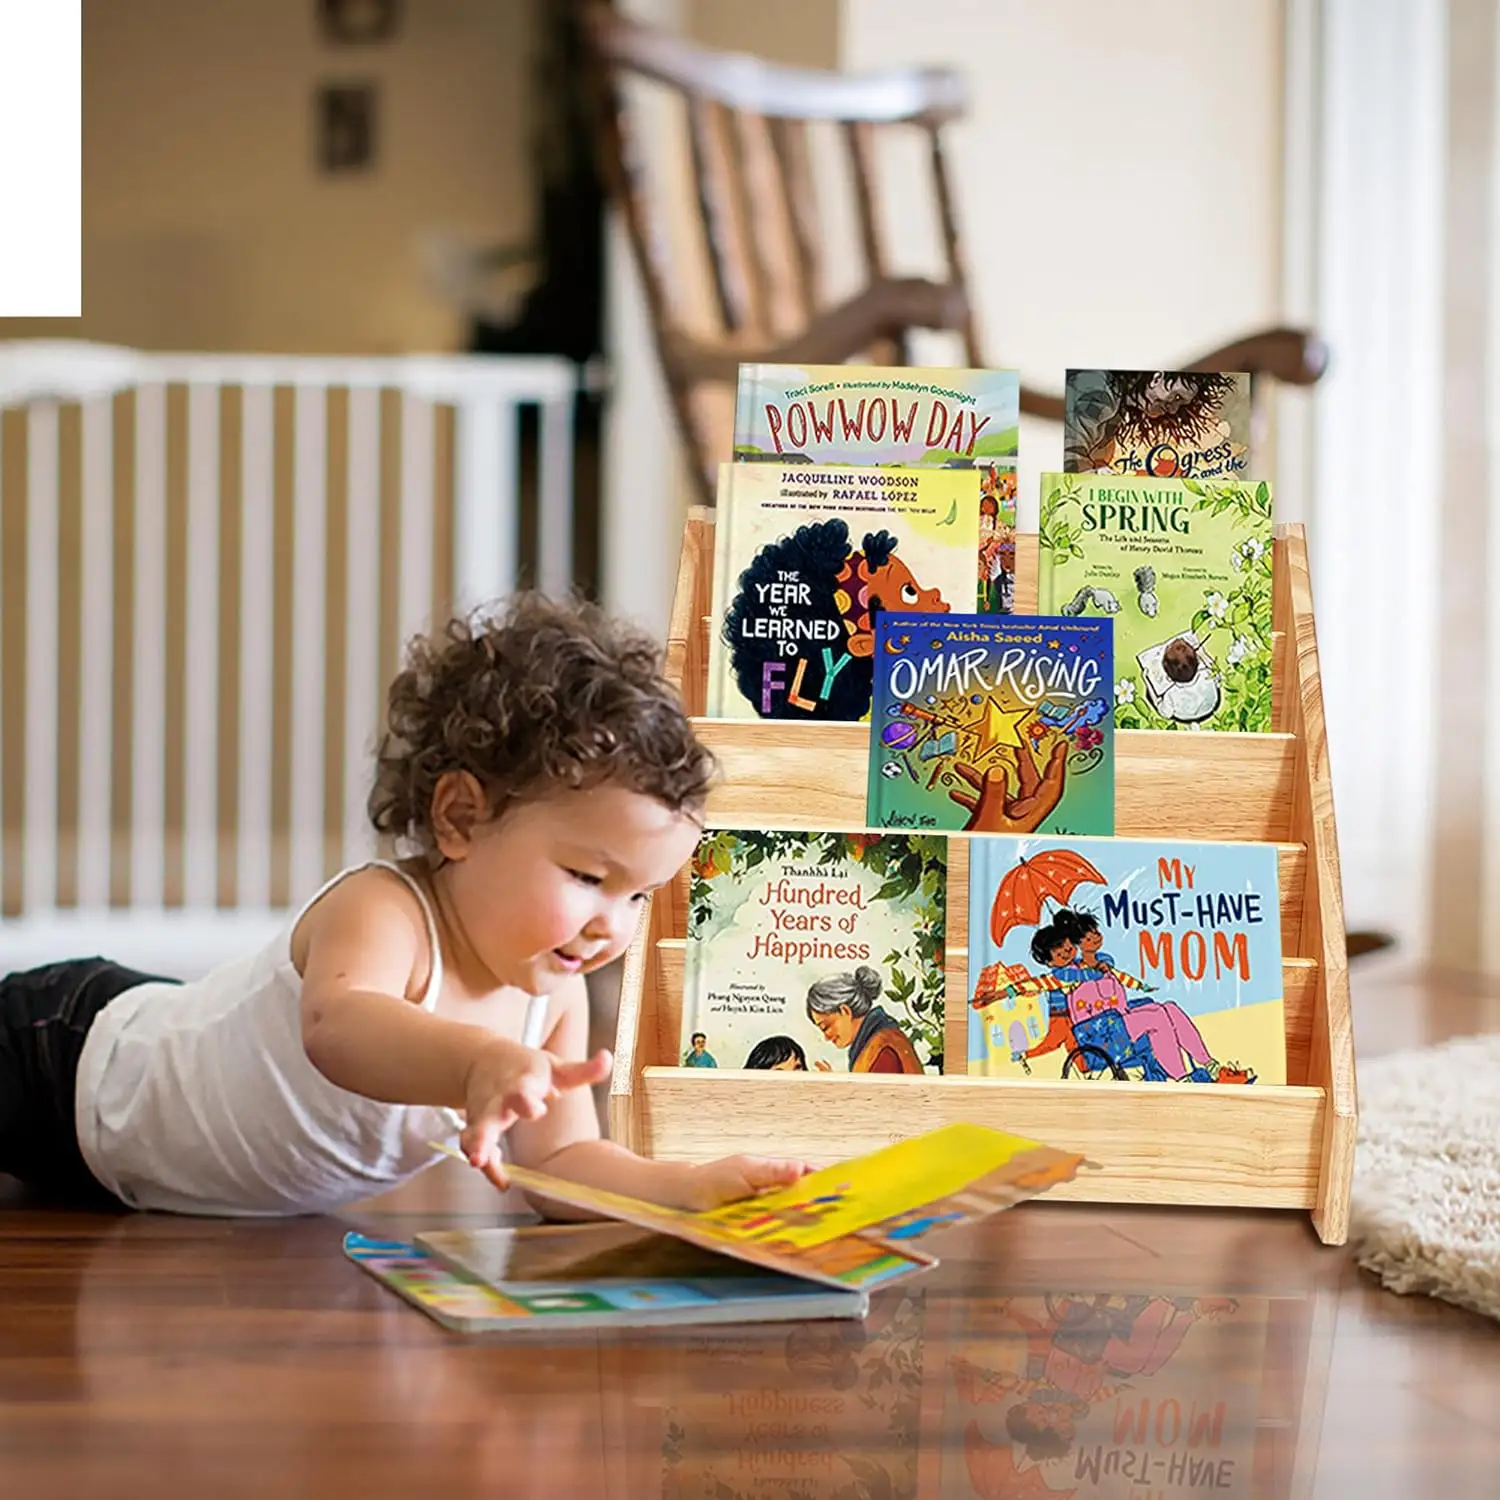 유아용 책장 어린이 책장을 위한 책장 나무 책 진열대 친환경, 견고하고 안전한 어린이 성장 책장